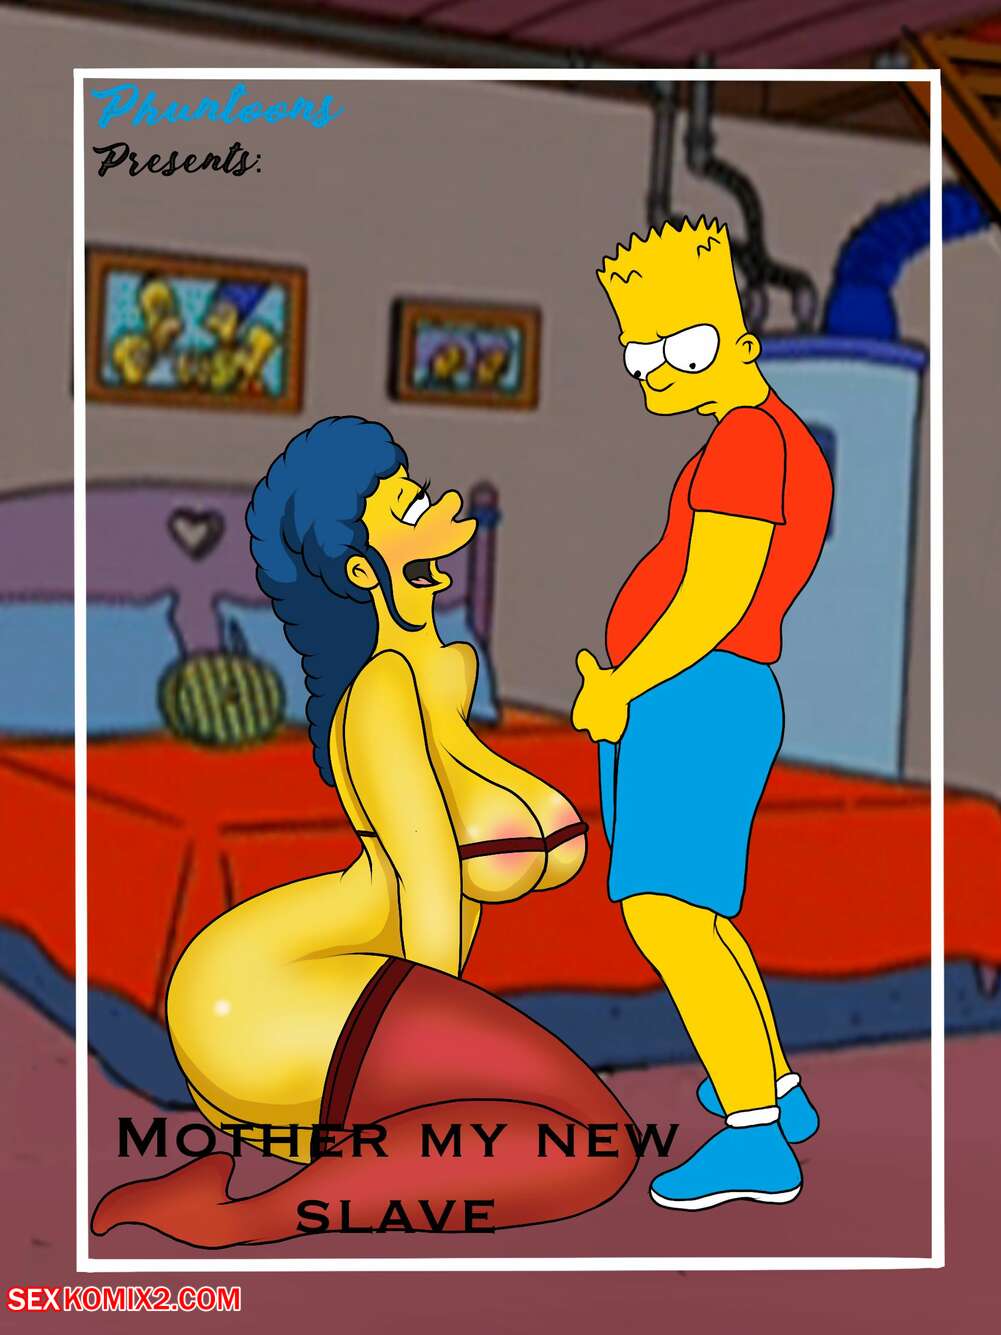 1001px x 1335px - âœ…ï¸ Porn comic Mother My New Slave. Bobs200 Sex comic guy burned his | Porn  comics in English for adults only | sexkomix2.com